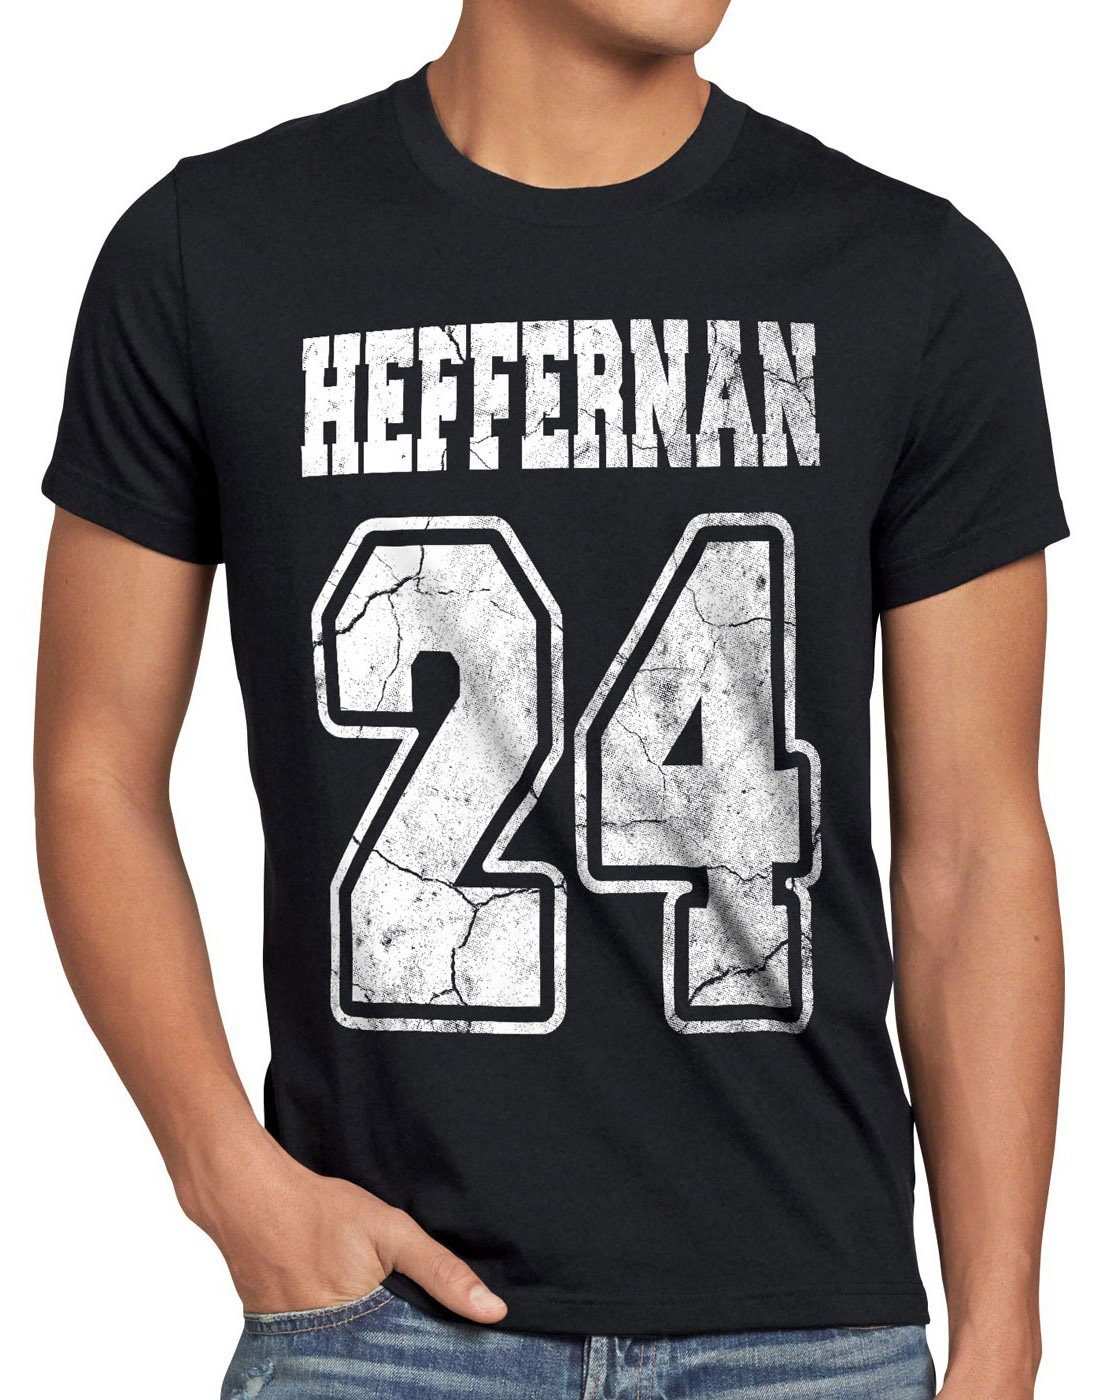 style3 Print-Shirt Herren coopers doug T-Shirt the sitcom of 24 Heffernan queens IPS king spooner schwarz